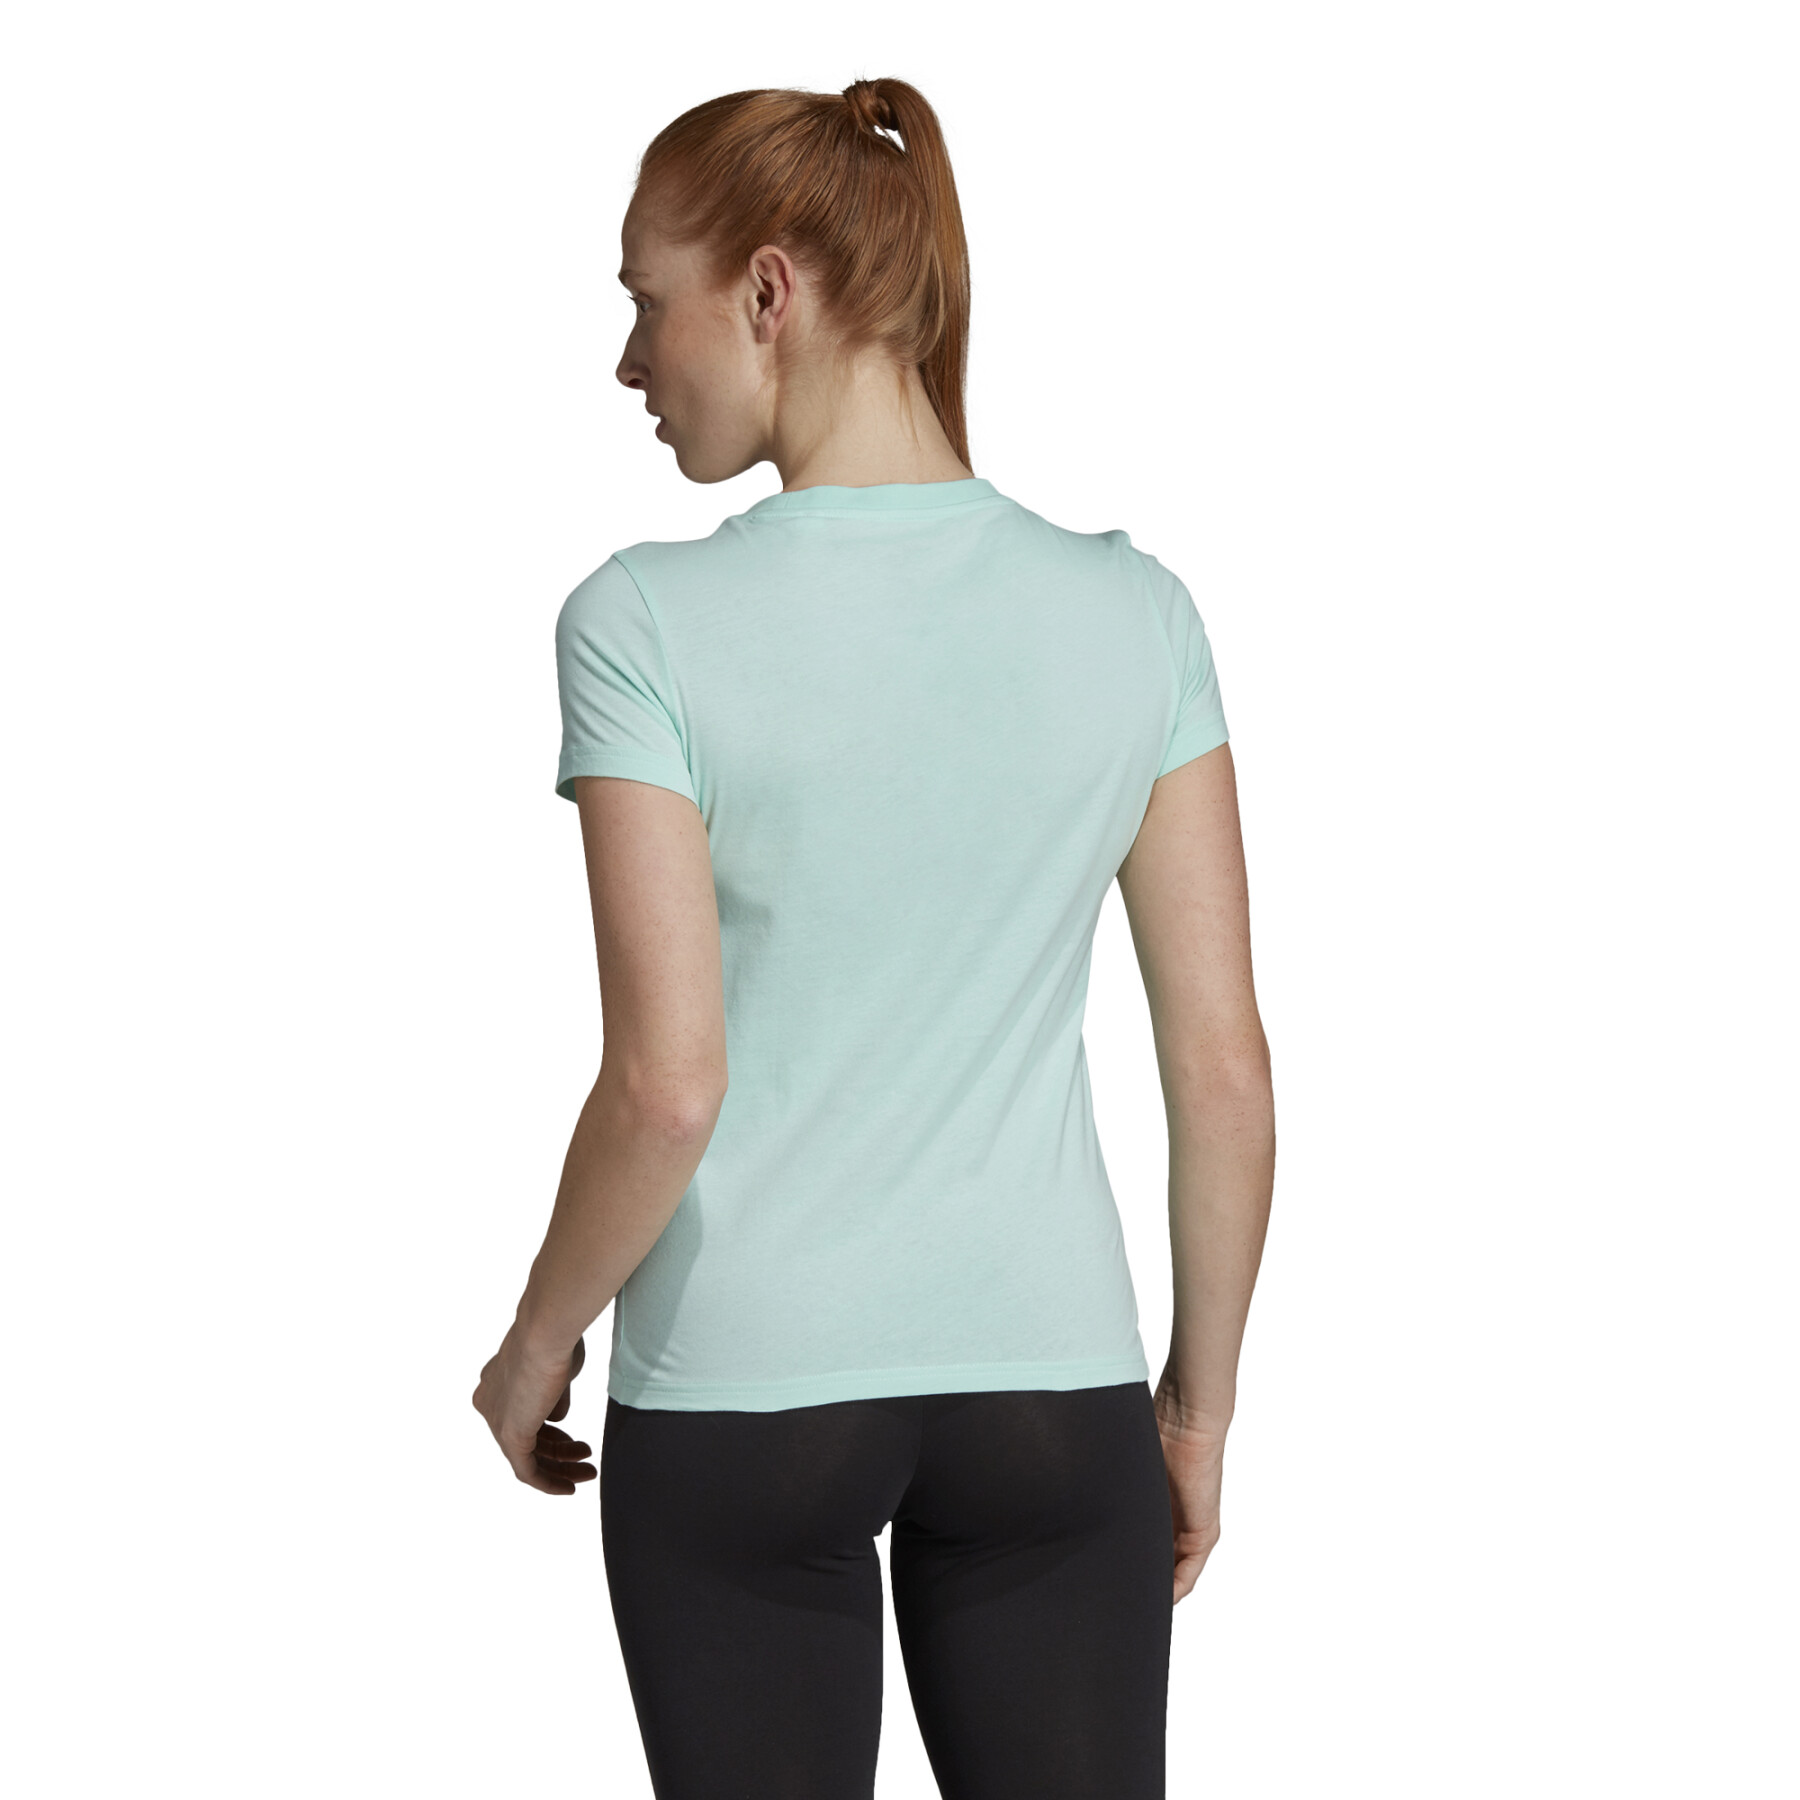 T-Shirt Frau adidas Essentials Linear